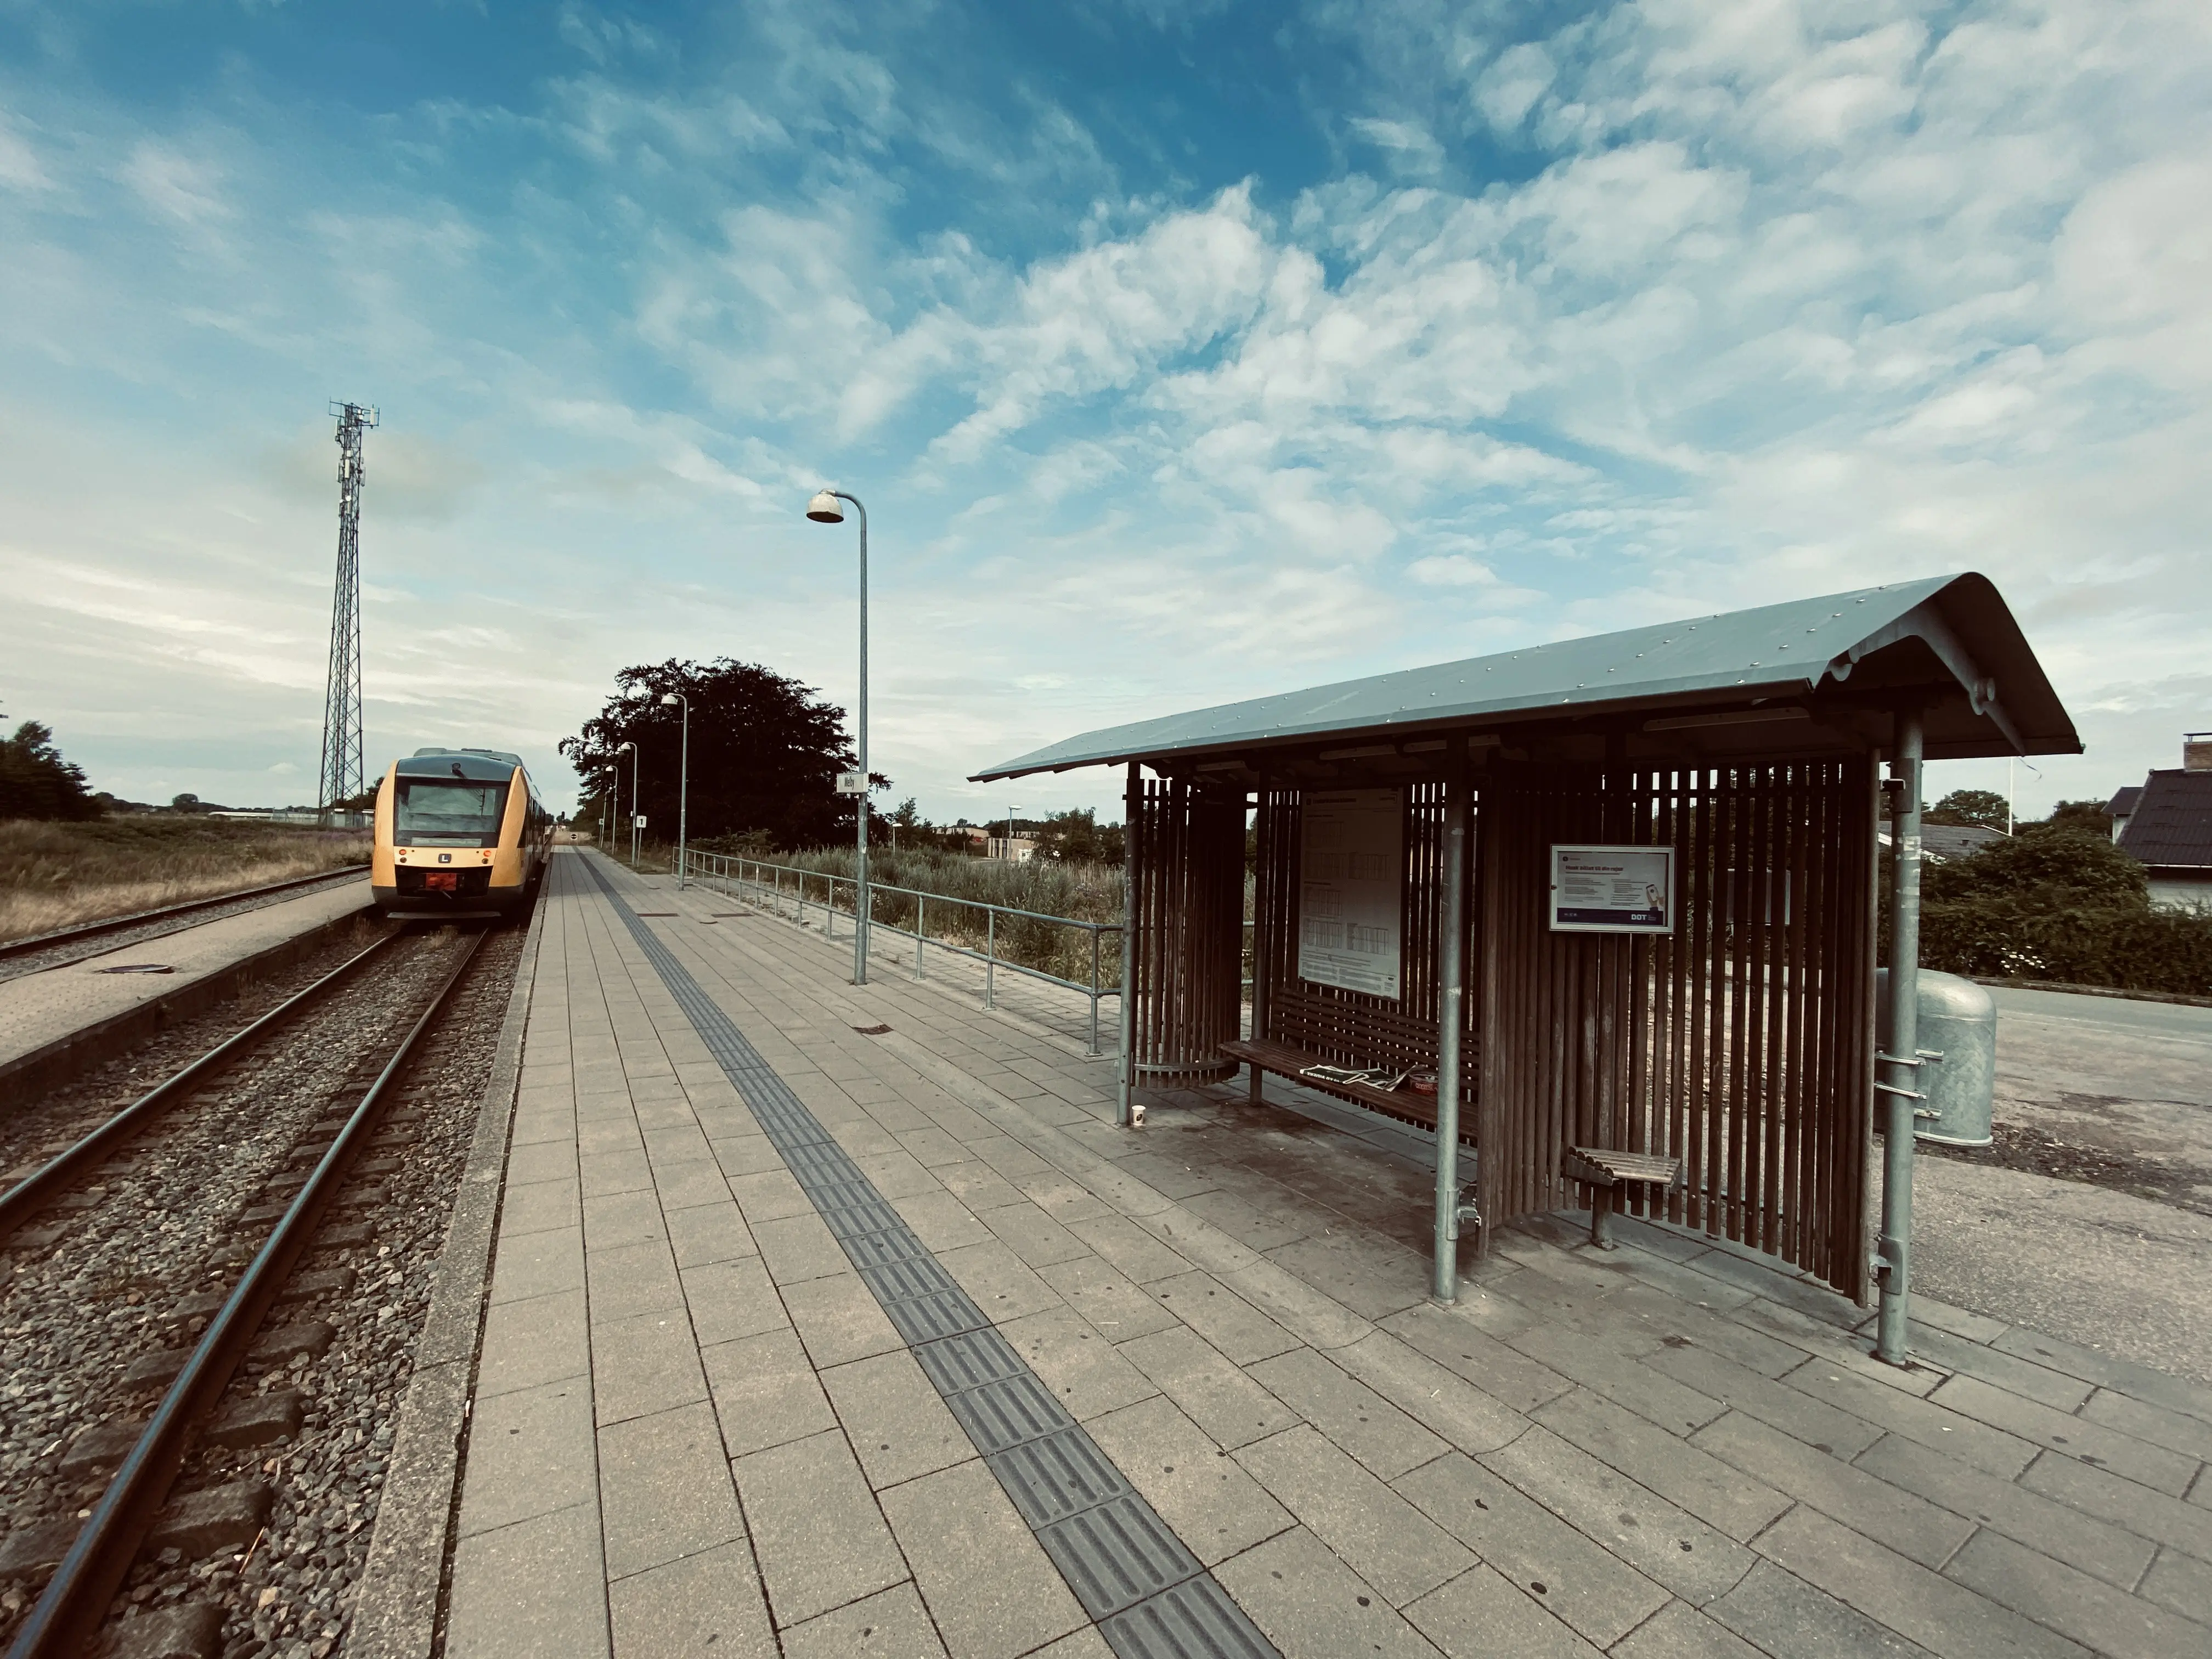 Billede af tog ud for Melby Trinbræt.